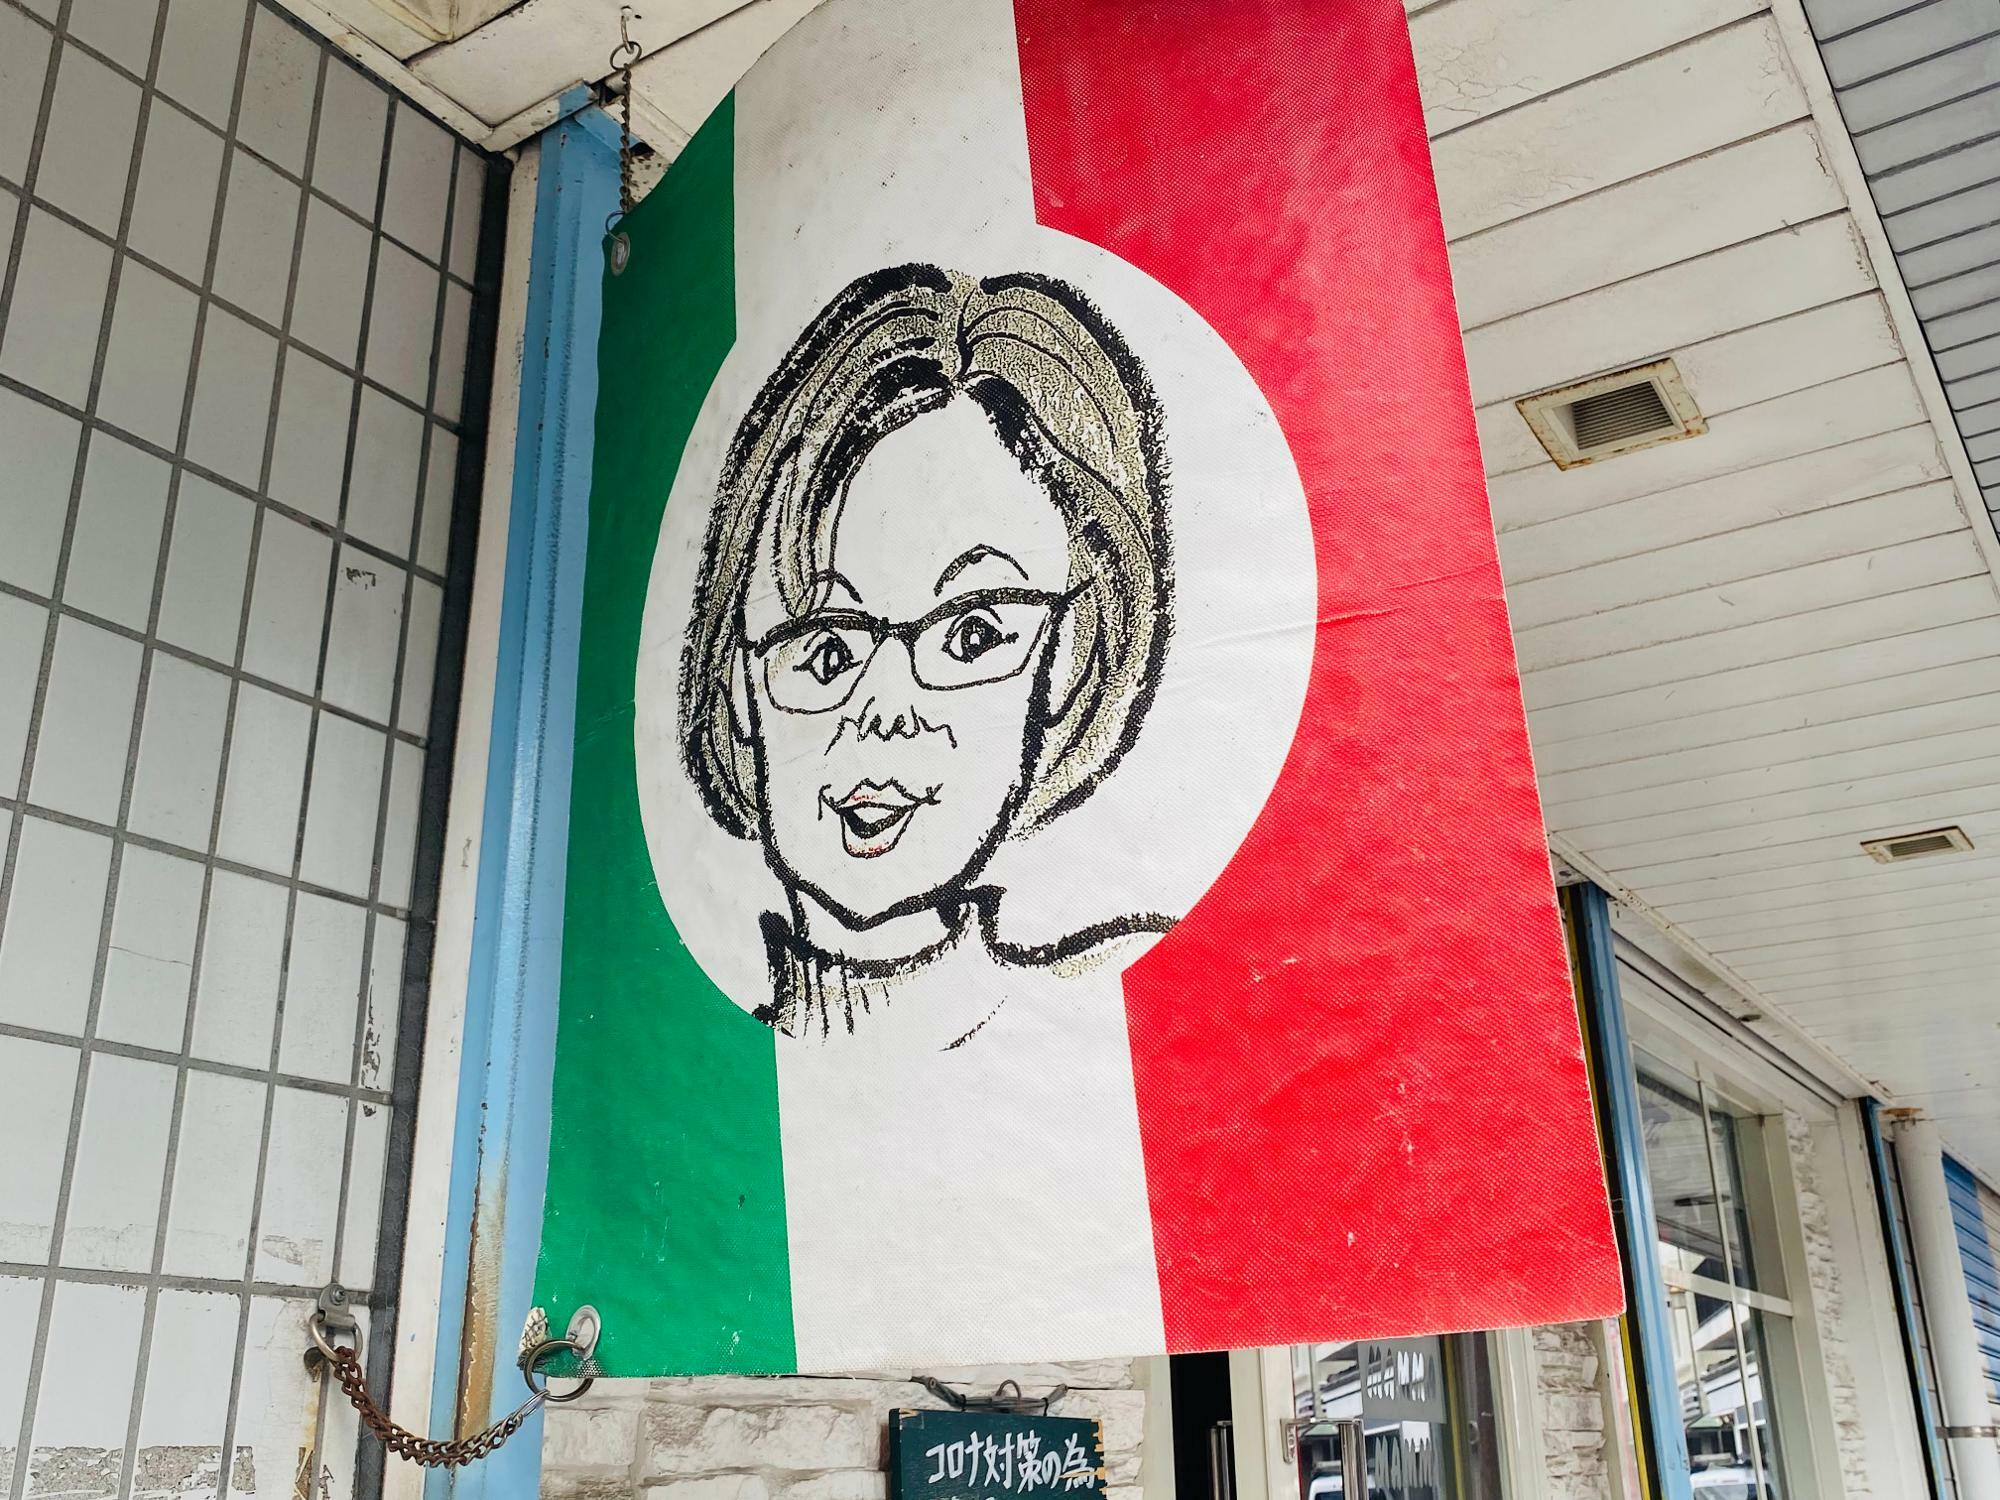 かわいいお母さんのイラストが描かれたイタリア国旗の看板